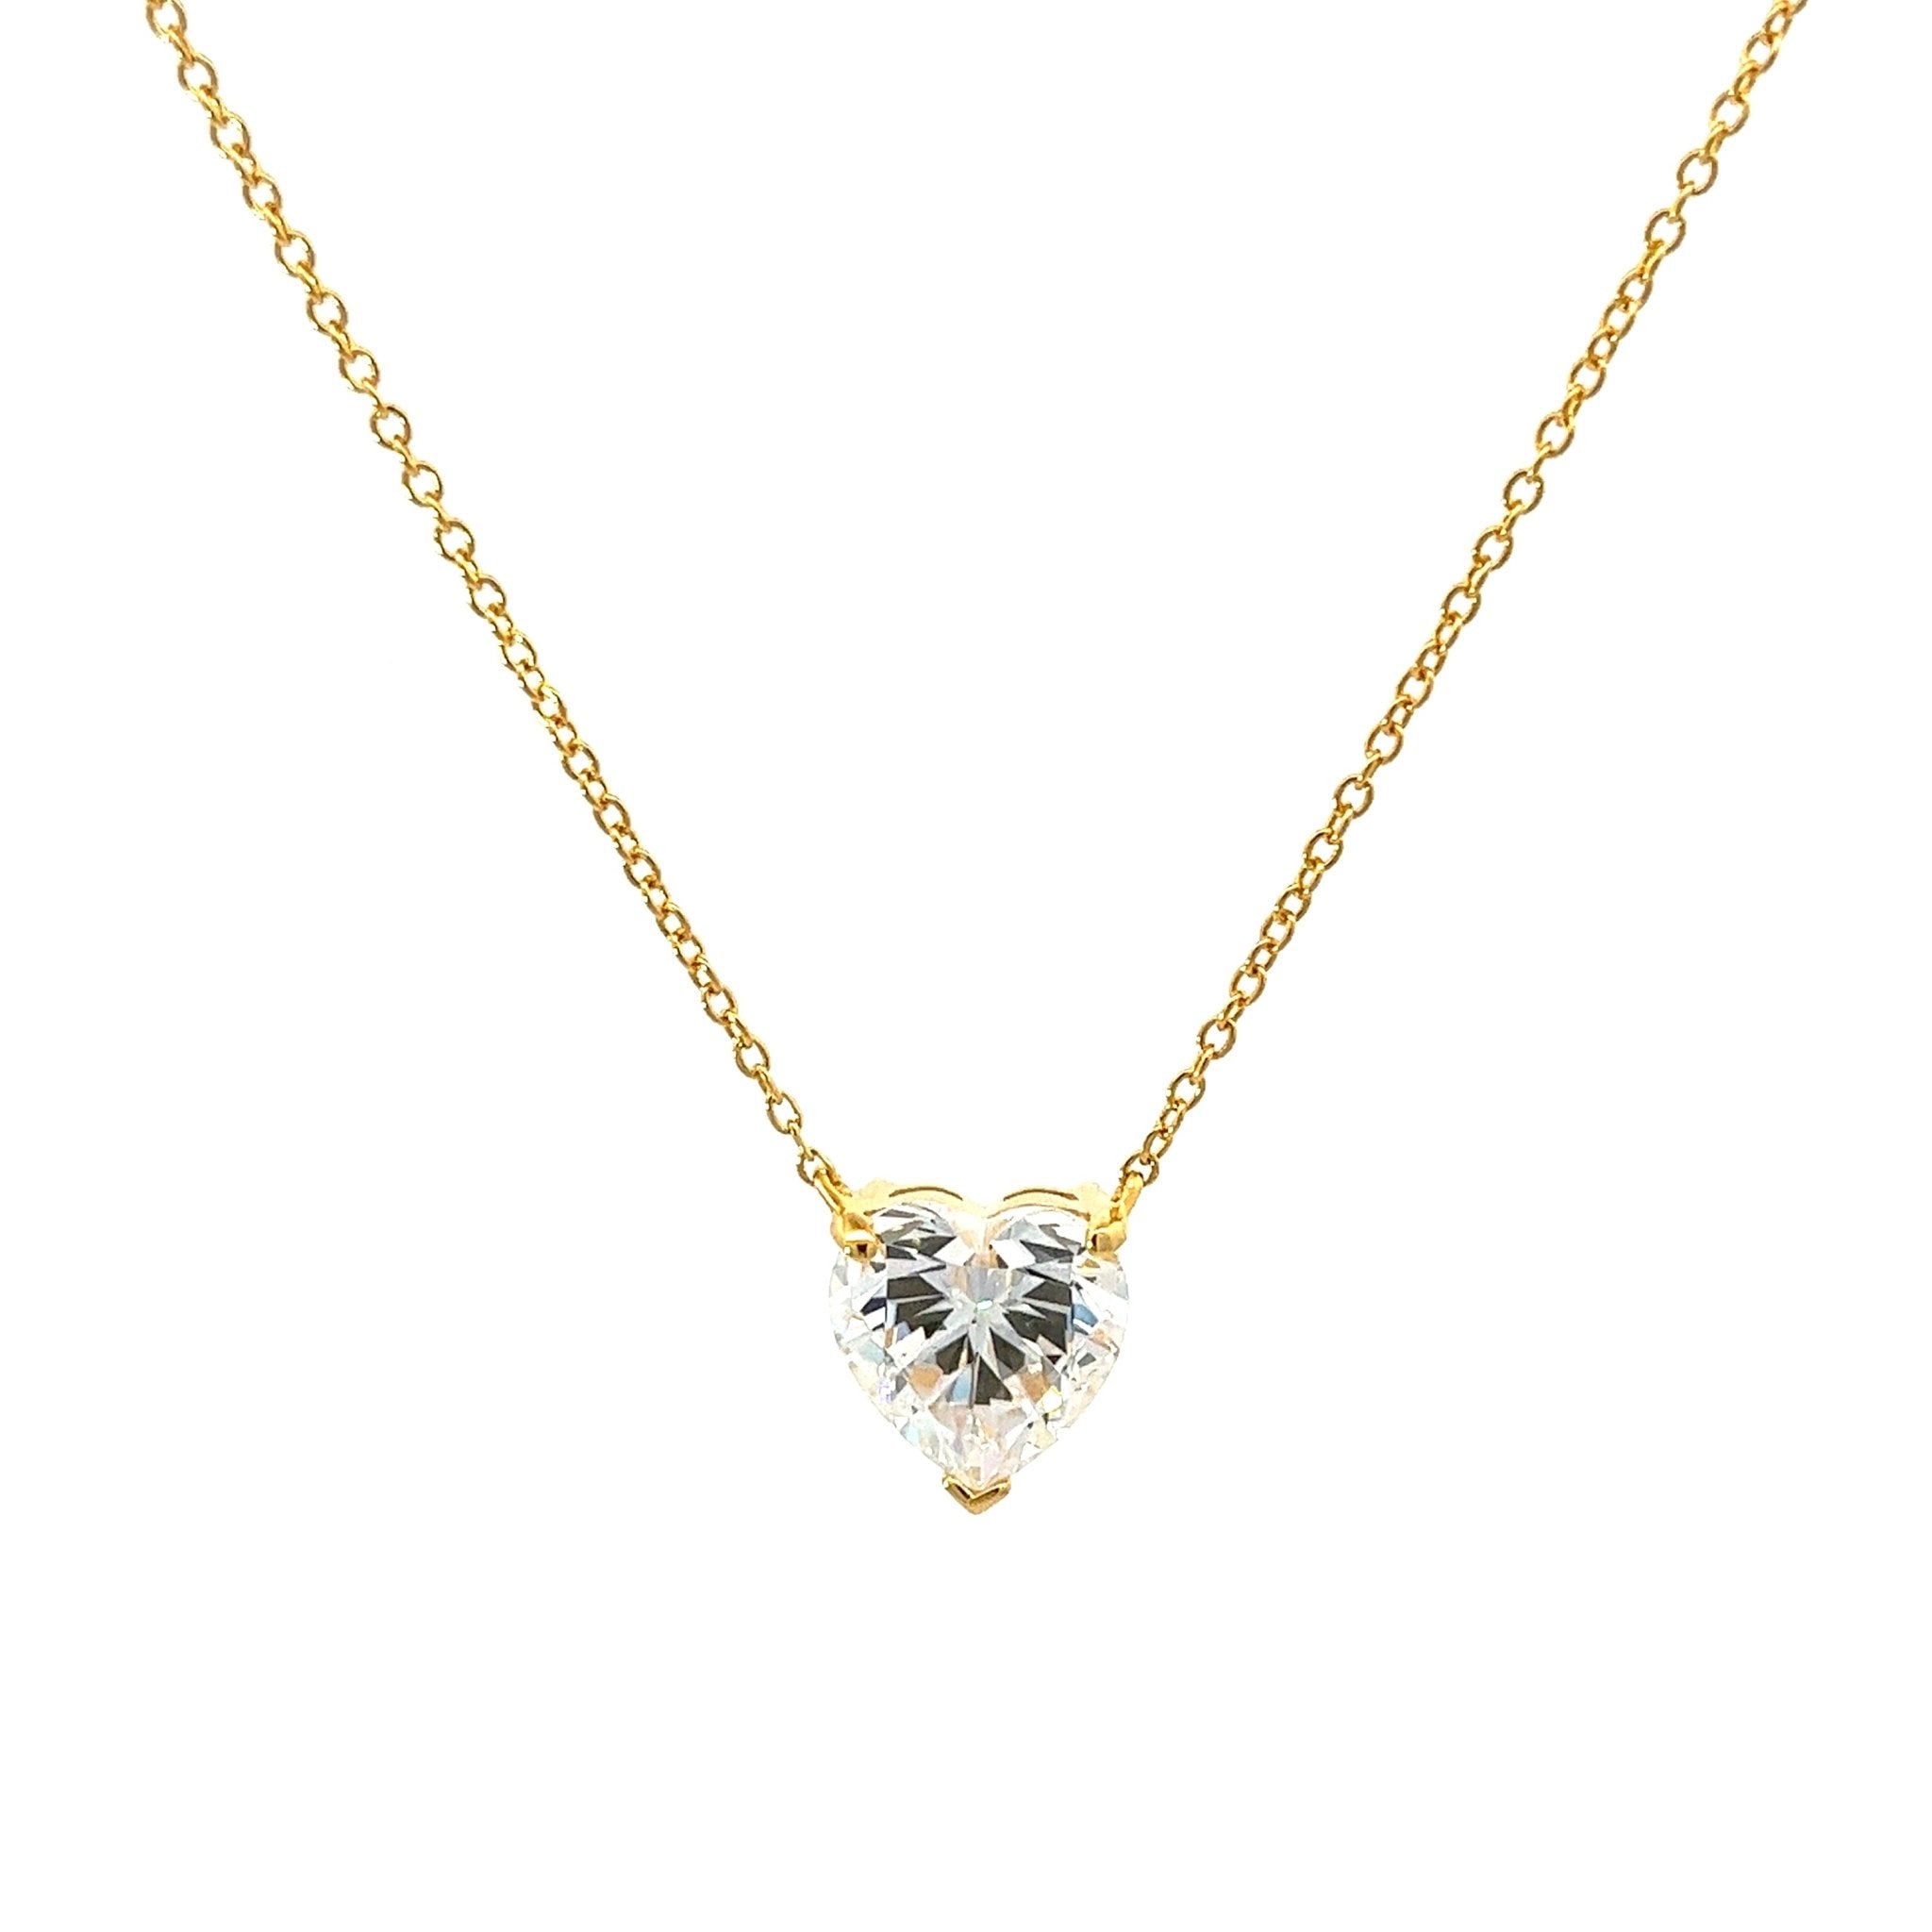 Diamond Alternative Heart Silver Necklace by Natkina